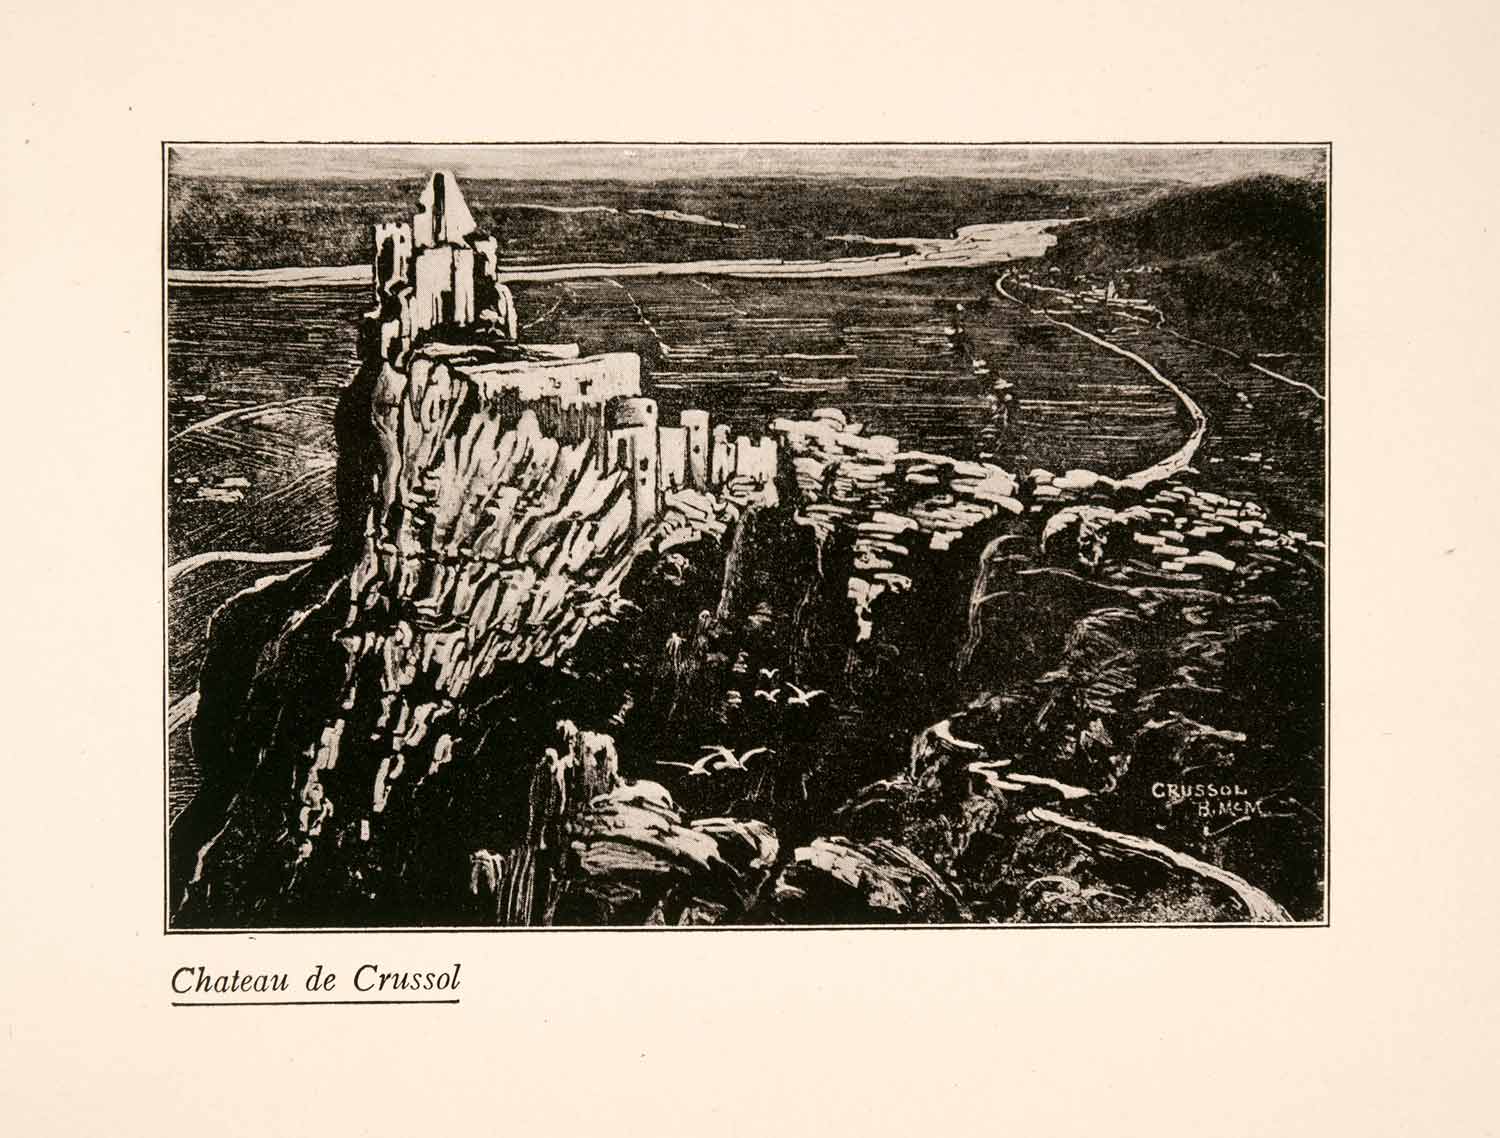 1929 Print Blanche McManus Chateau de Crussol France Architecture Historic XGLA1